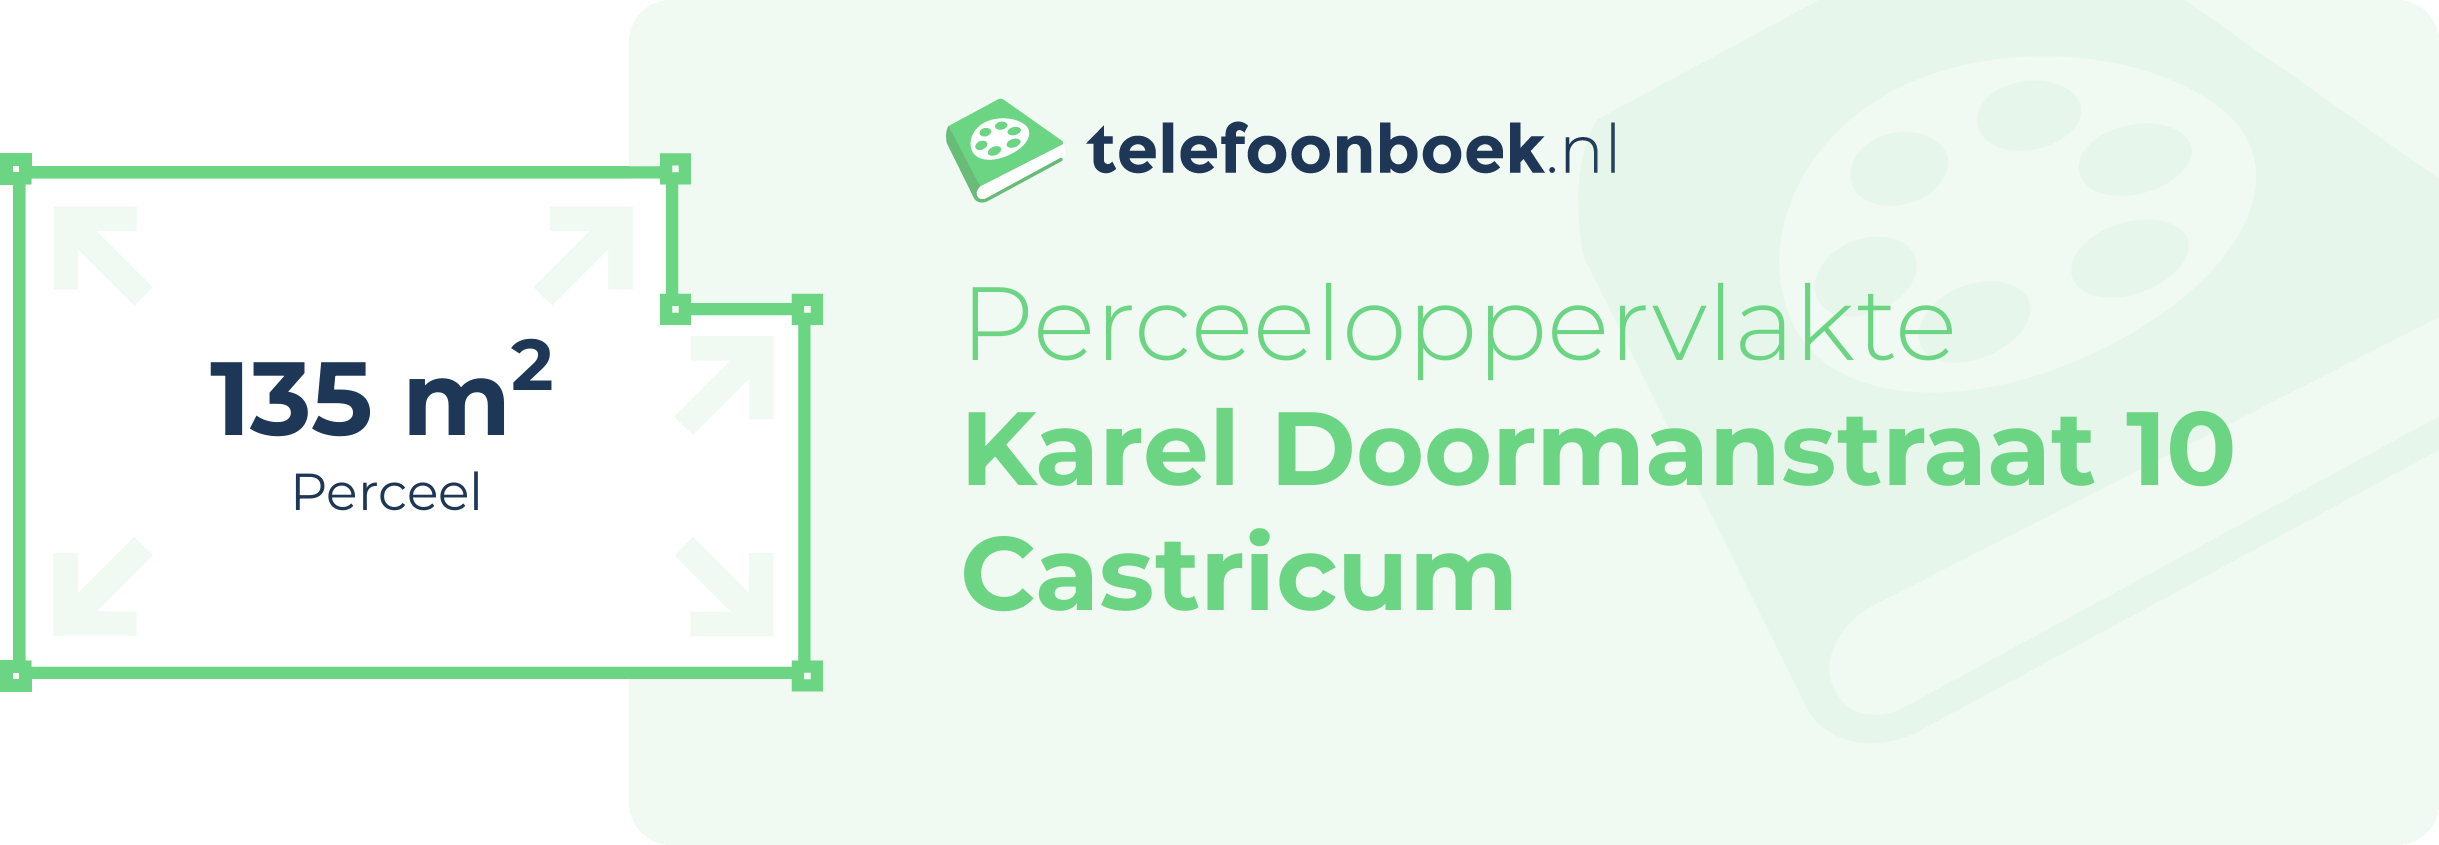 Perceeloppervlakte Karel Doormanstraat 10 Castricum